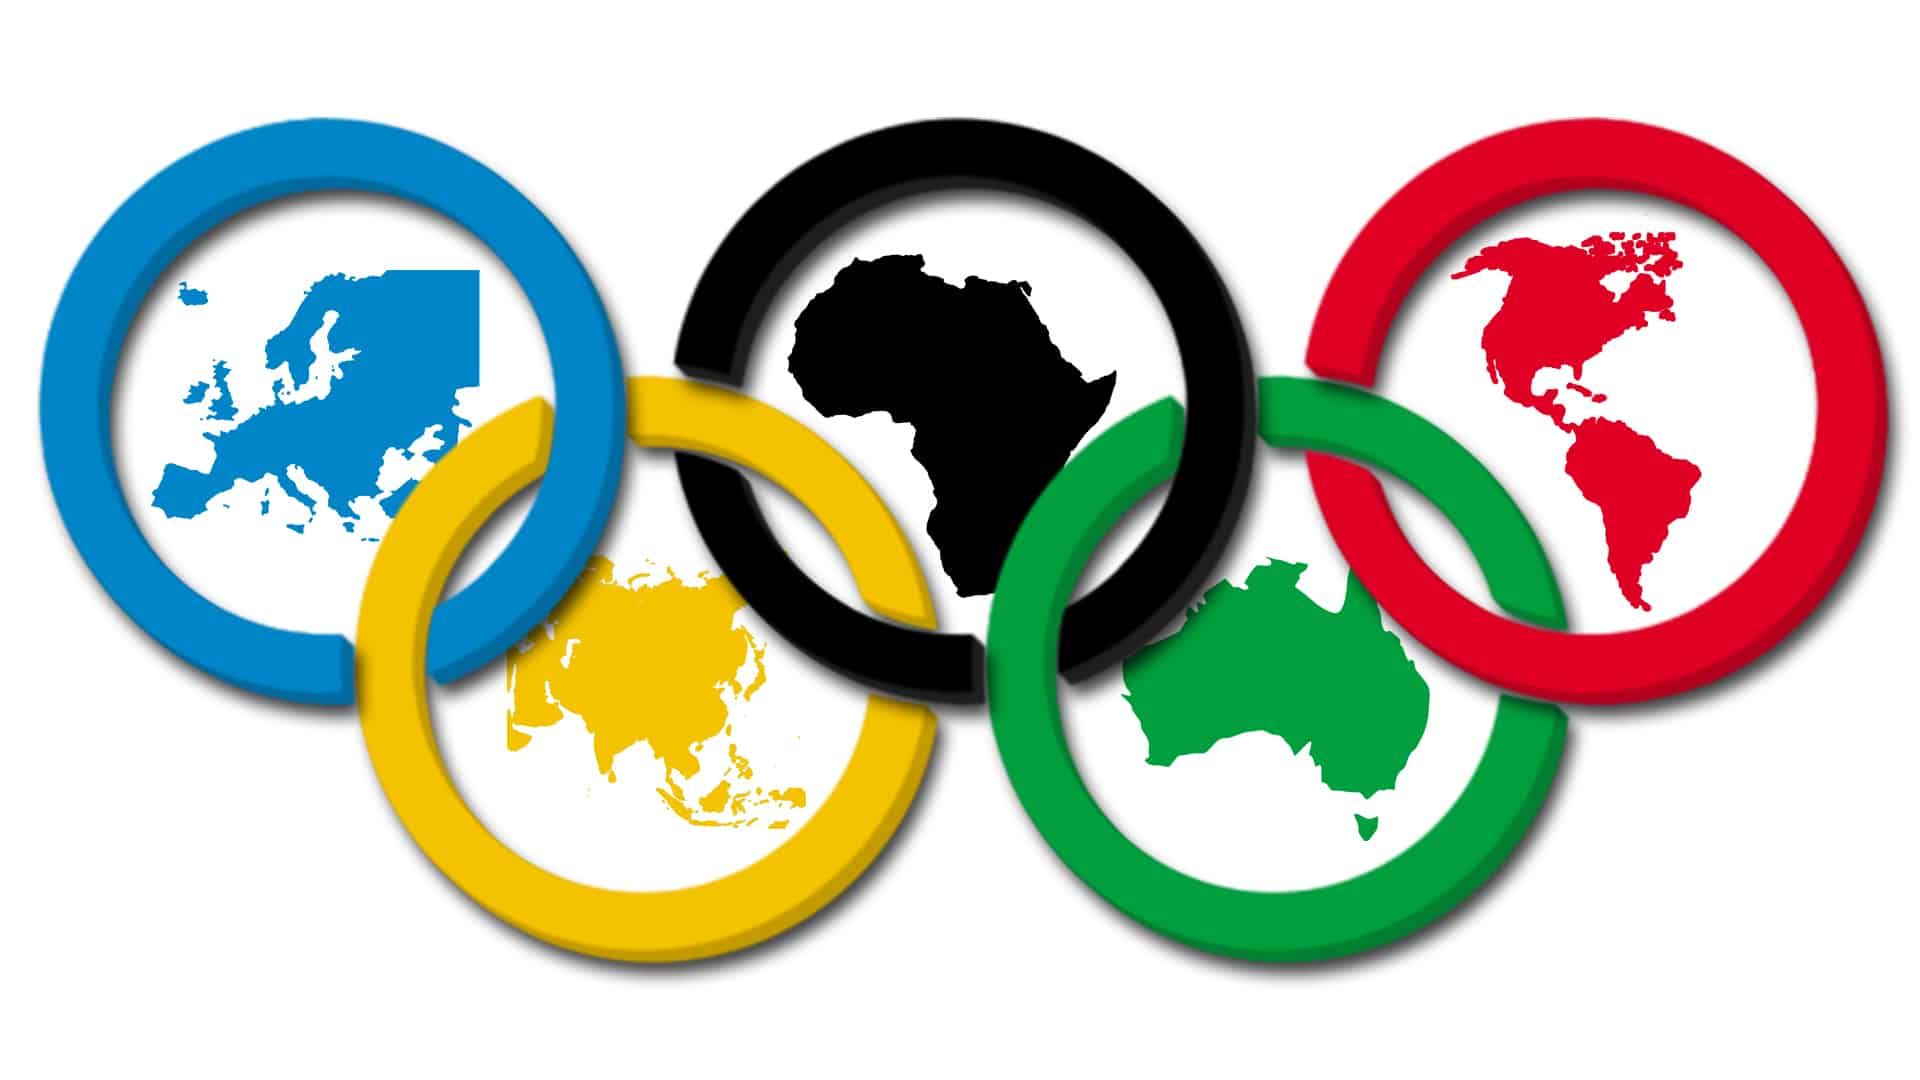 Olimpíadas - Origem, importância, principais esportes olímpicos e atletas